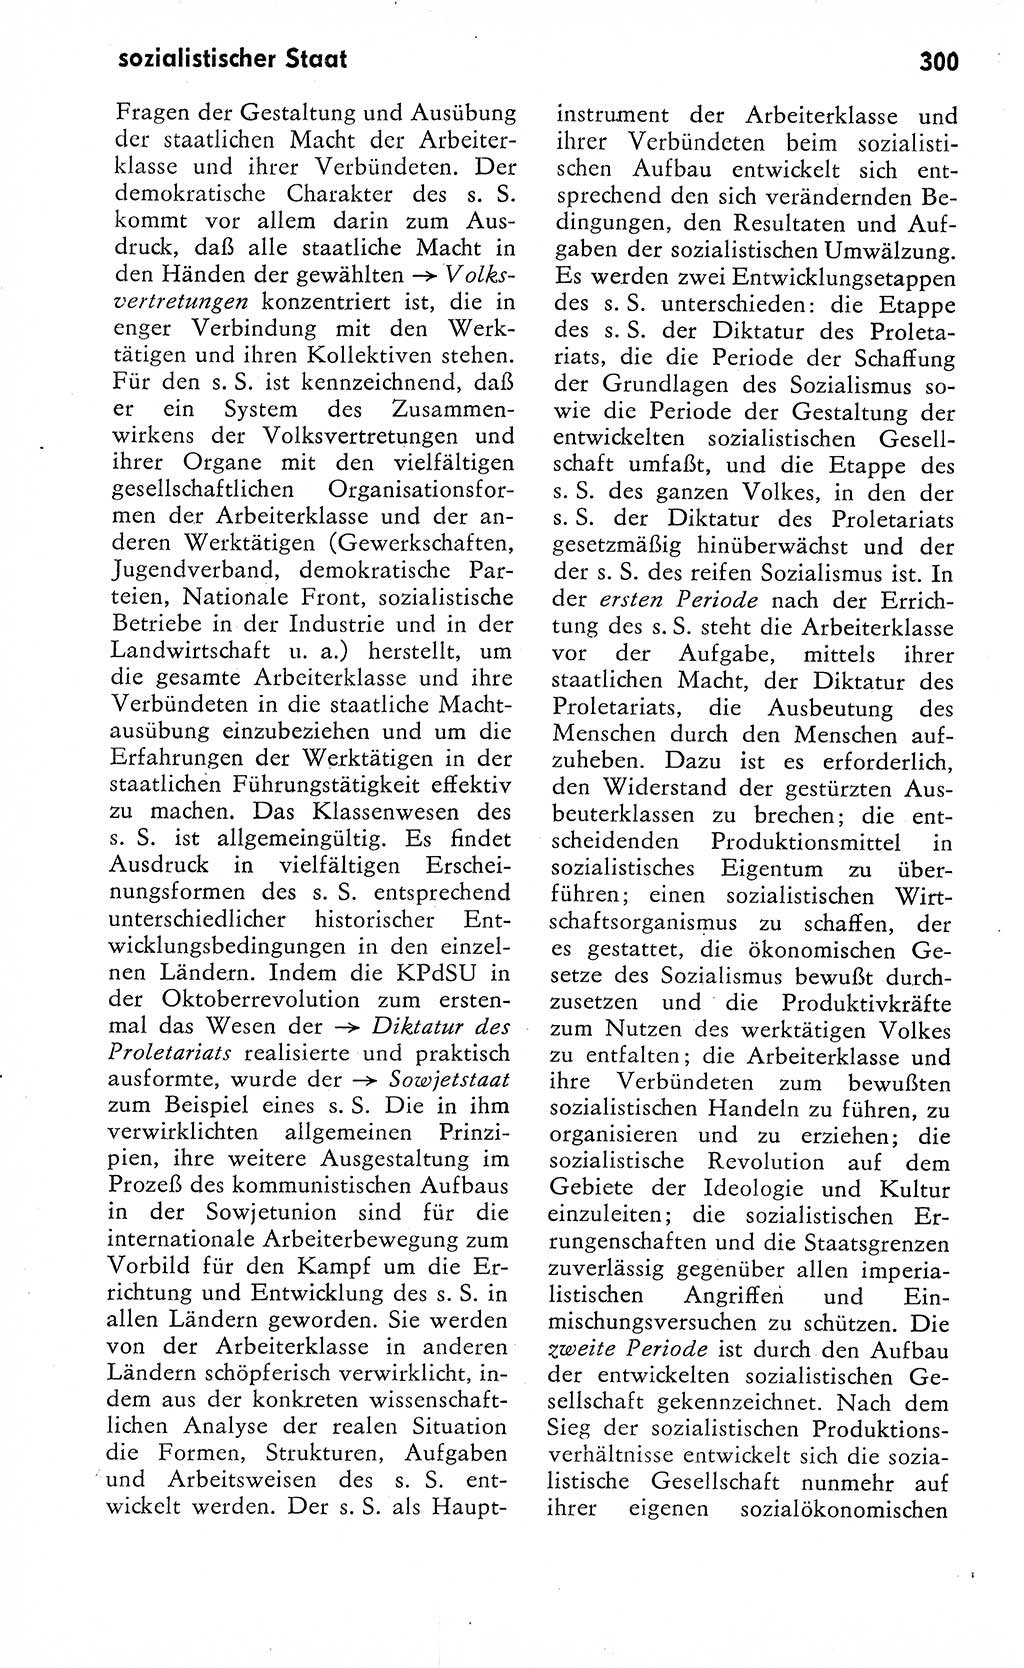 Wörterbuch zum sozialistischen Staat [Deutsche Demokratische Republik (DDR)] 1974, Seite 300 (Wb. soz. St. DDR 1974, S. 300)